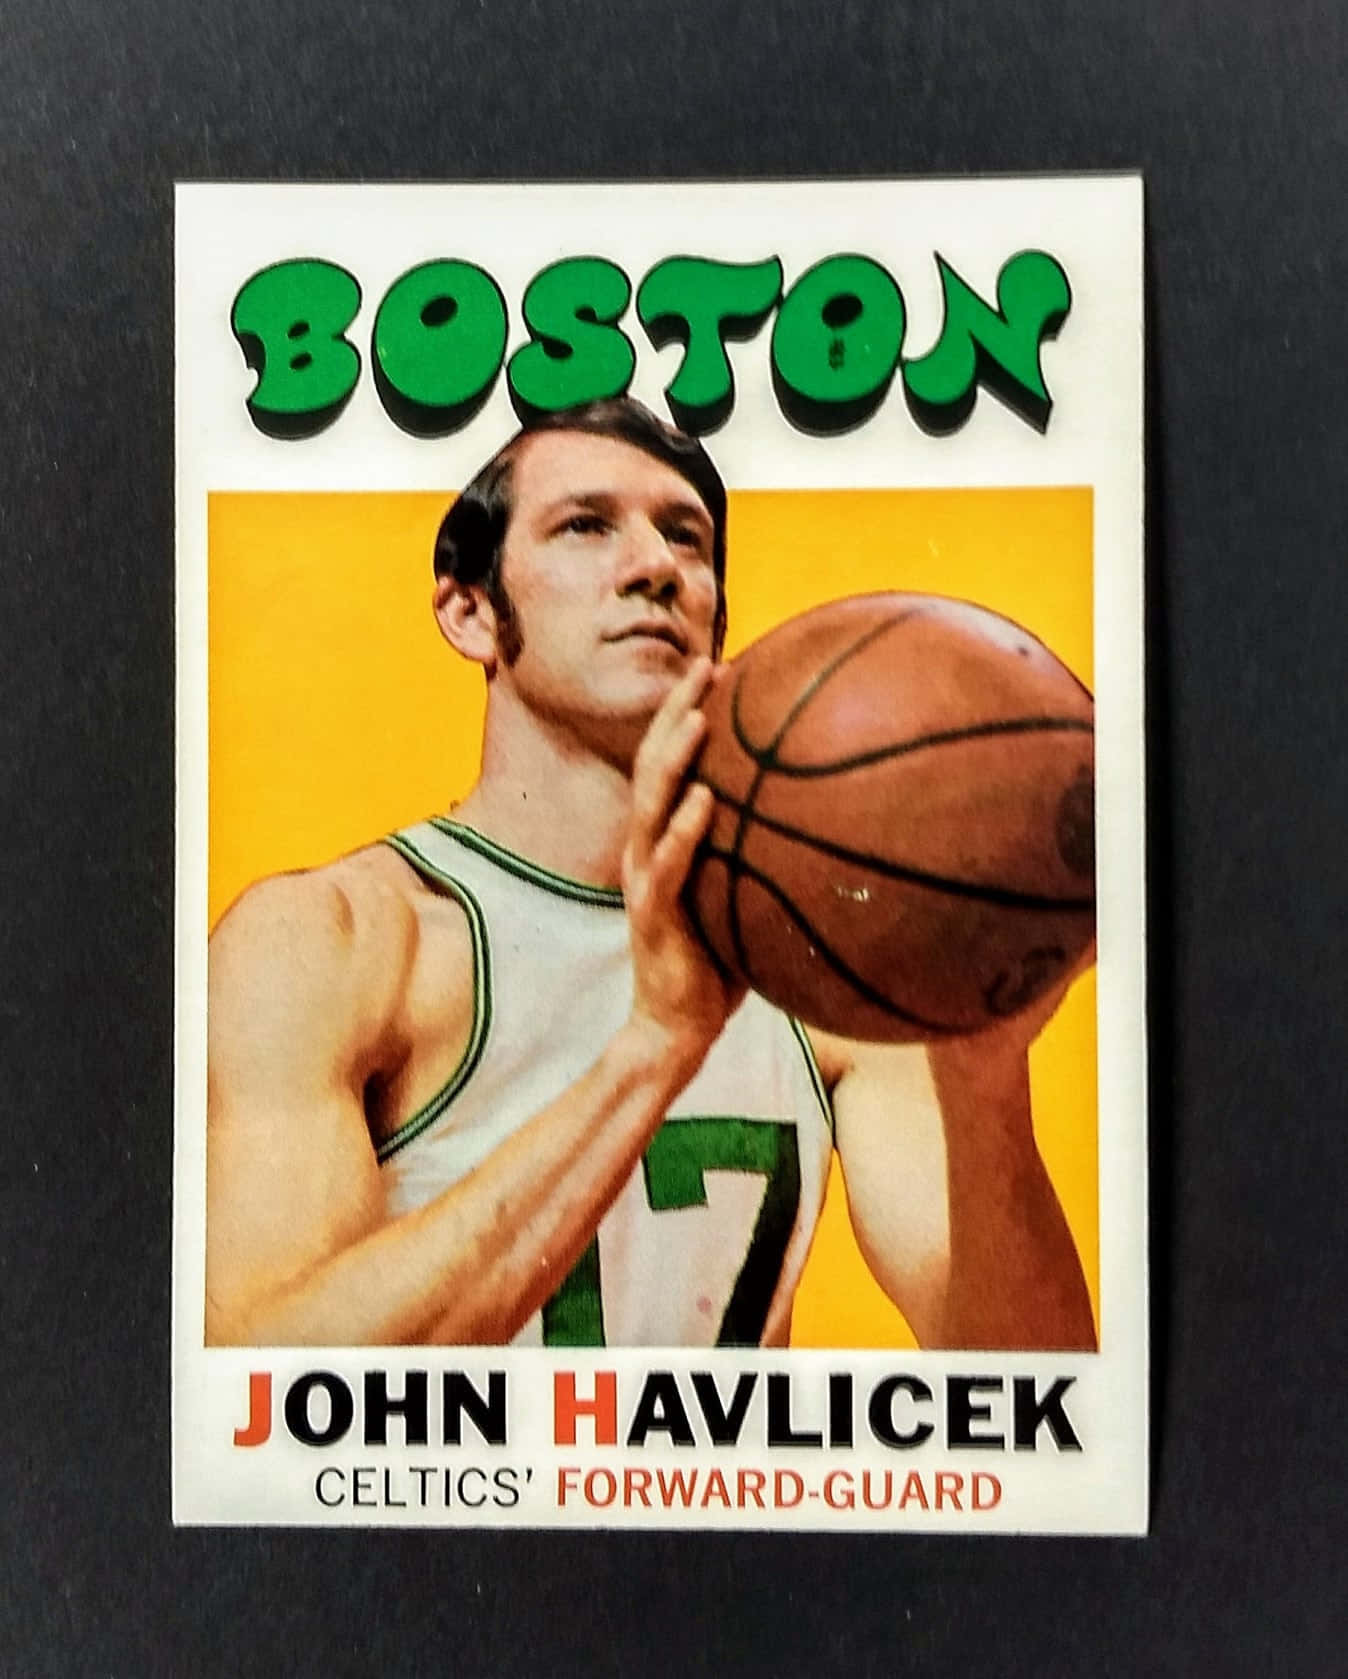 Vintage Plakat John Havlicek Basketball Team #17 Wallpaper